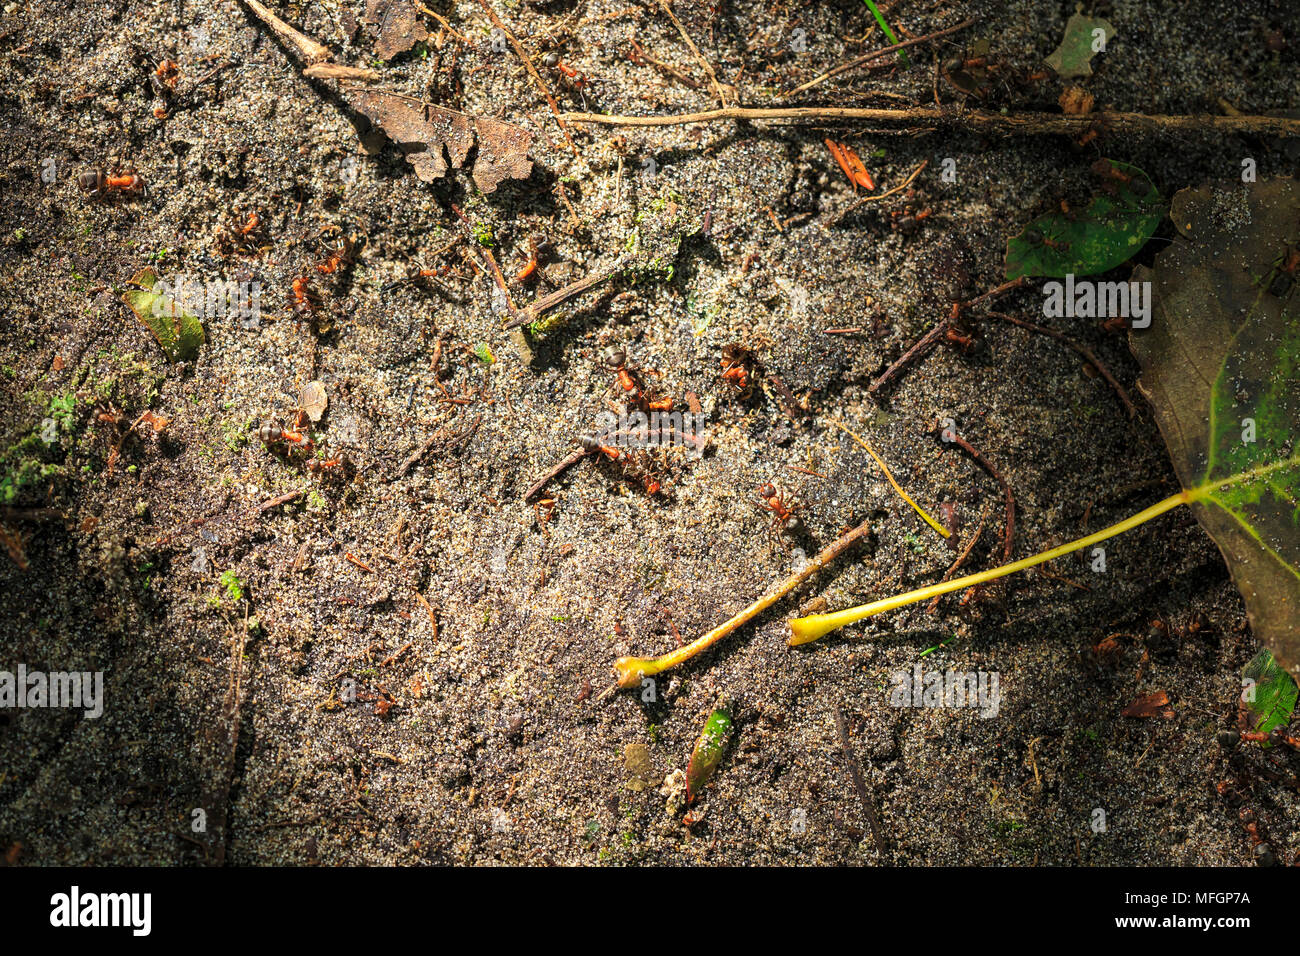 Red Ants zu Fuß auf dem Boden in einem Sunray von Licht in einen dunklen Wald. Stockfoto